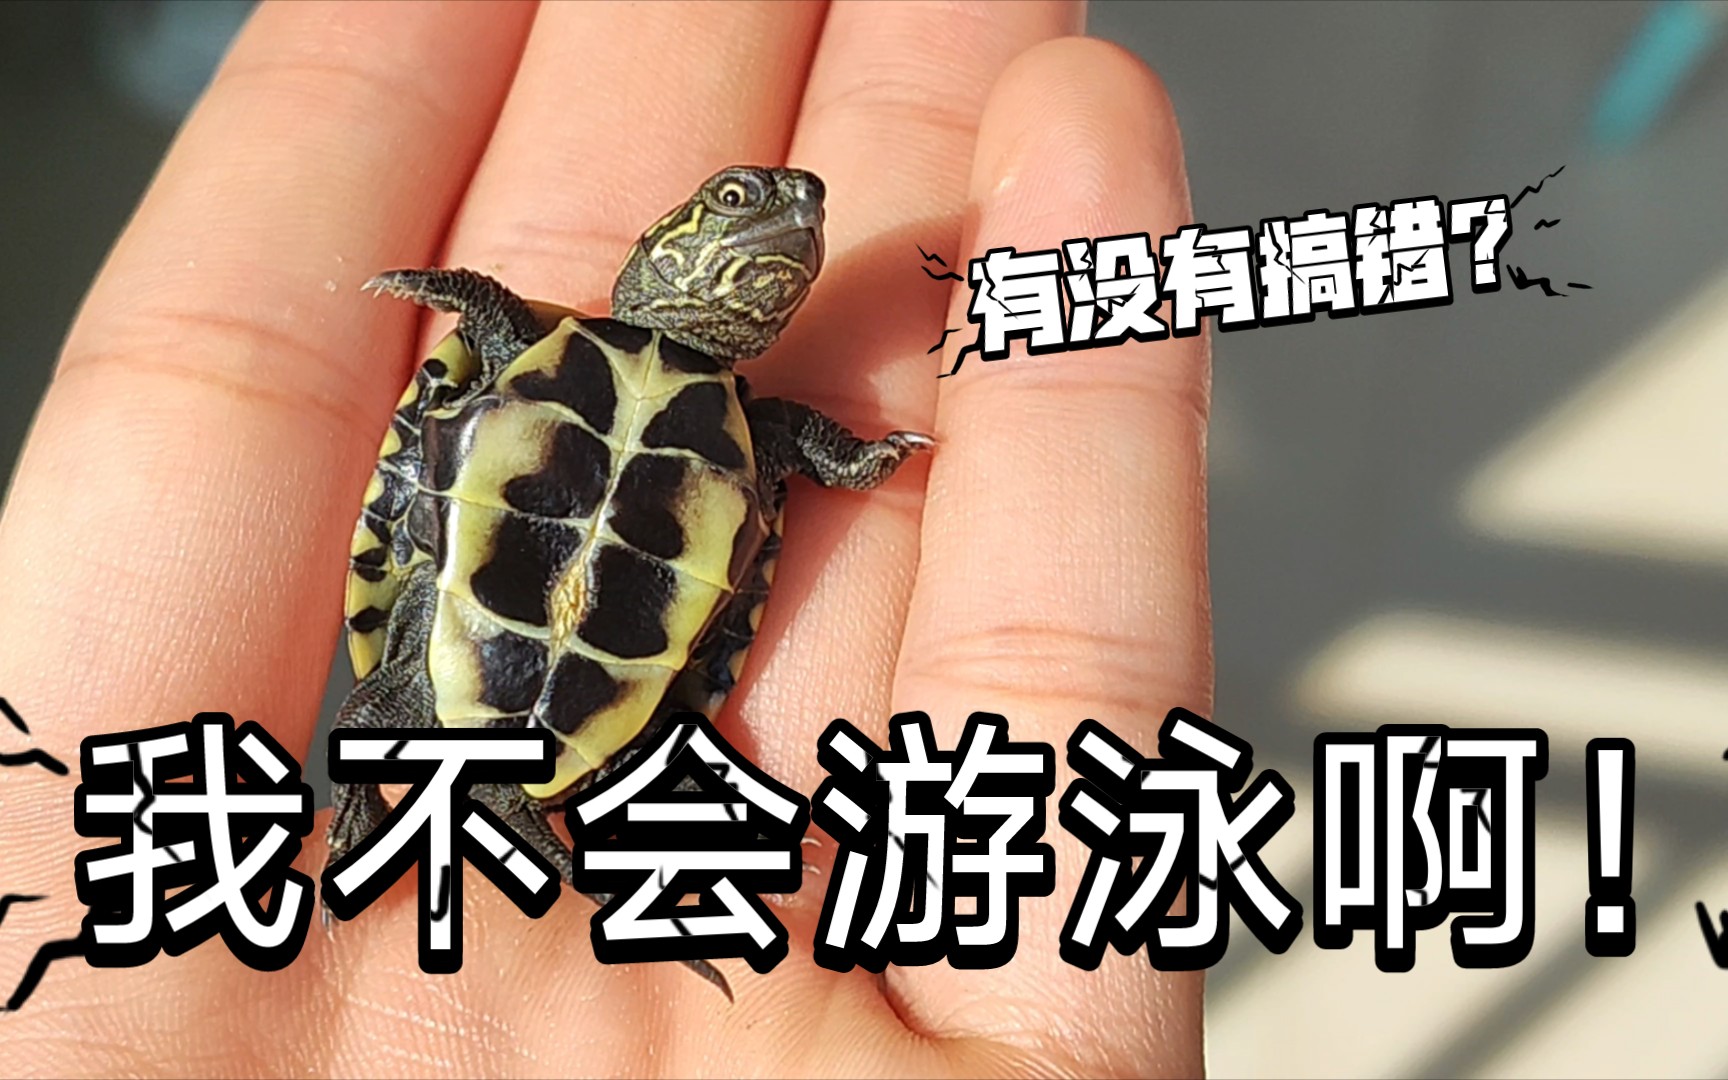 为什么你的草龟不能用深水去饲养?